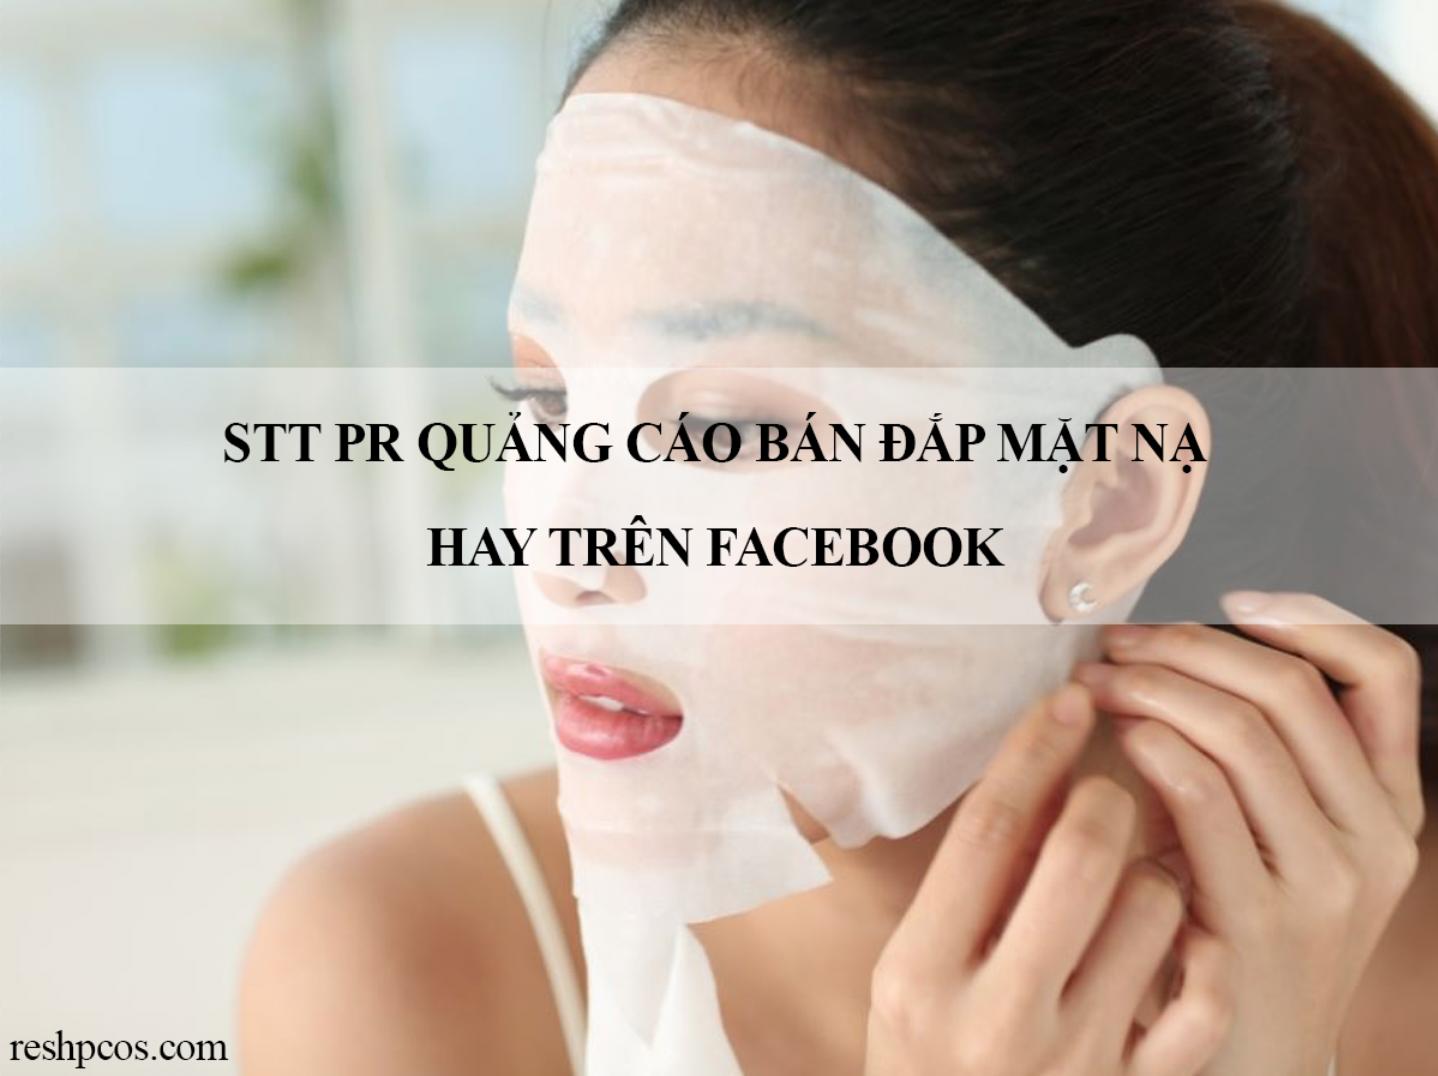 STT PR quảng cáo bán đắp mặt nạ hay trên Facebook